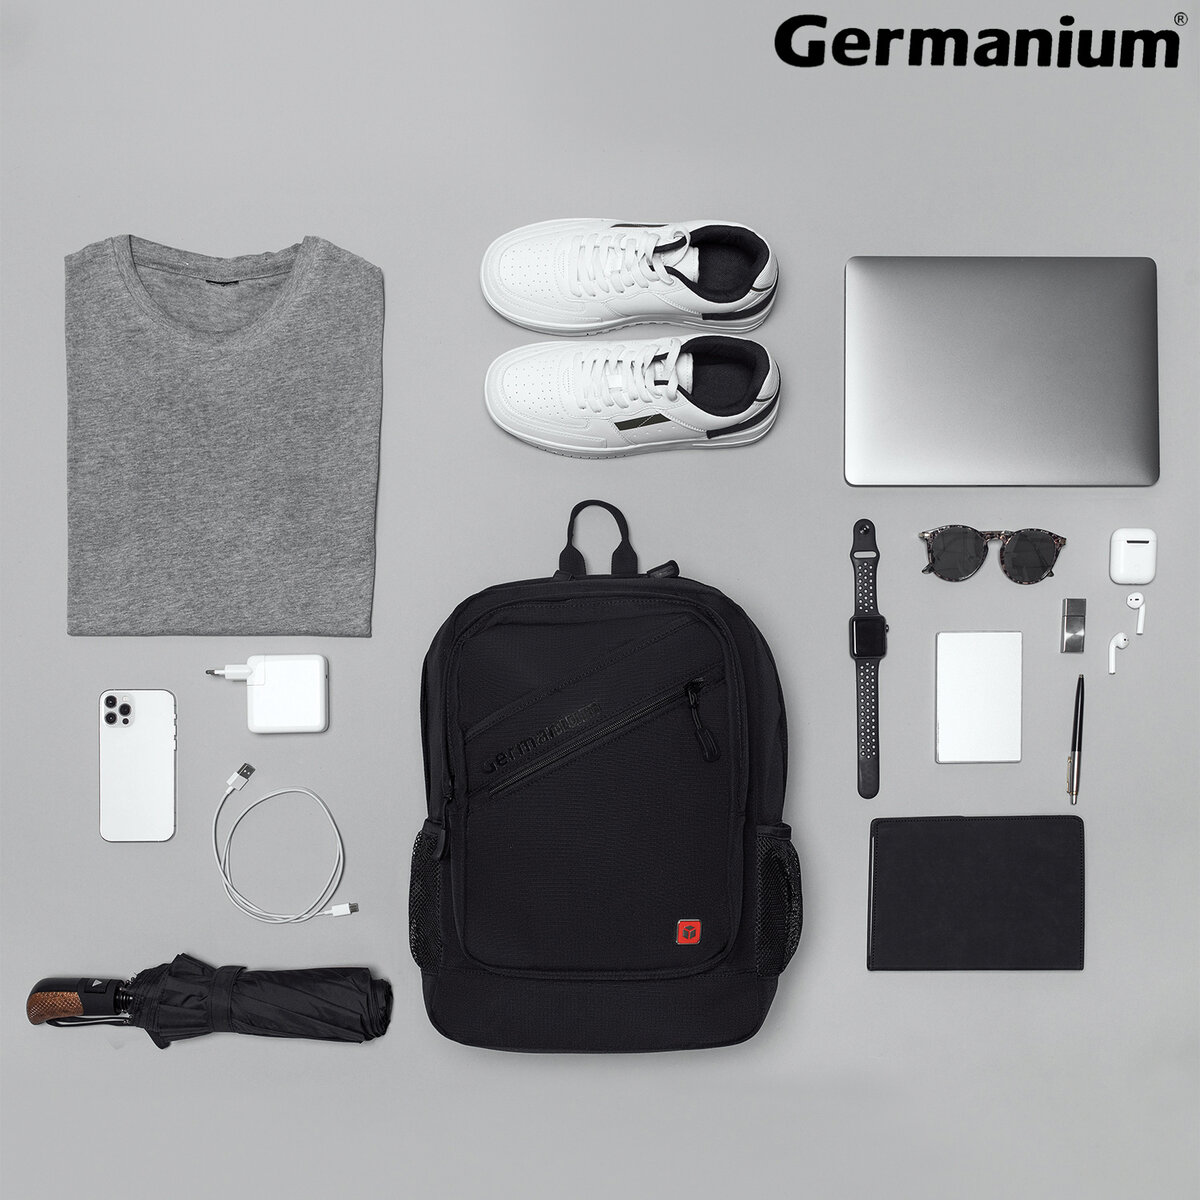 Рюкзак Germanium S-09 универсальный с отделением для ноутбука черный - фото 3